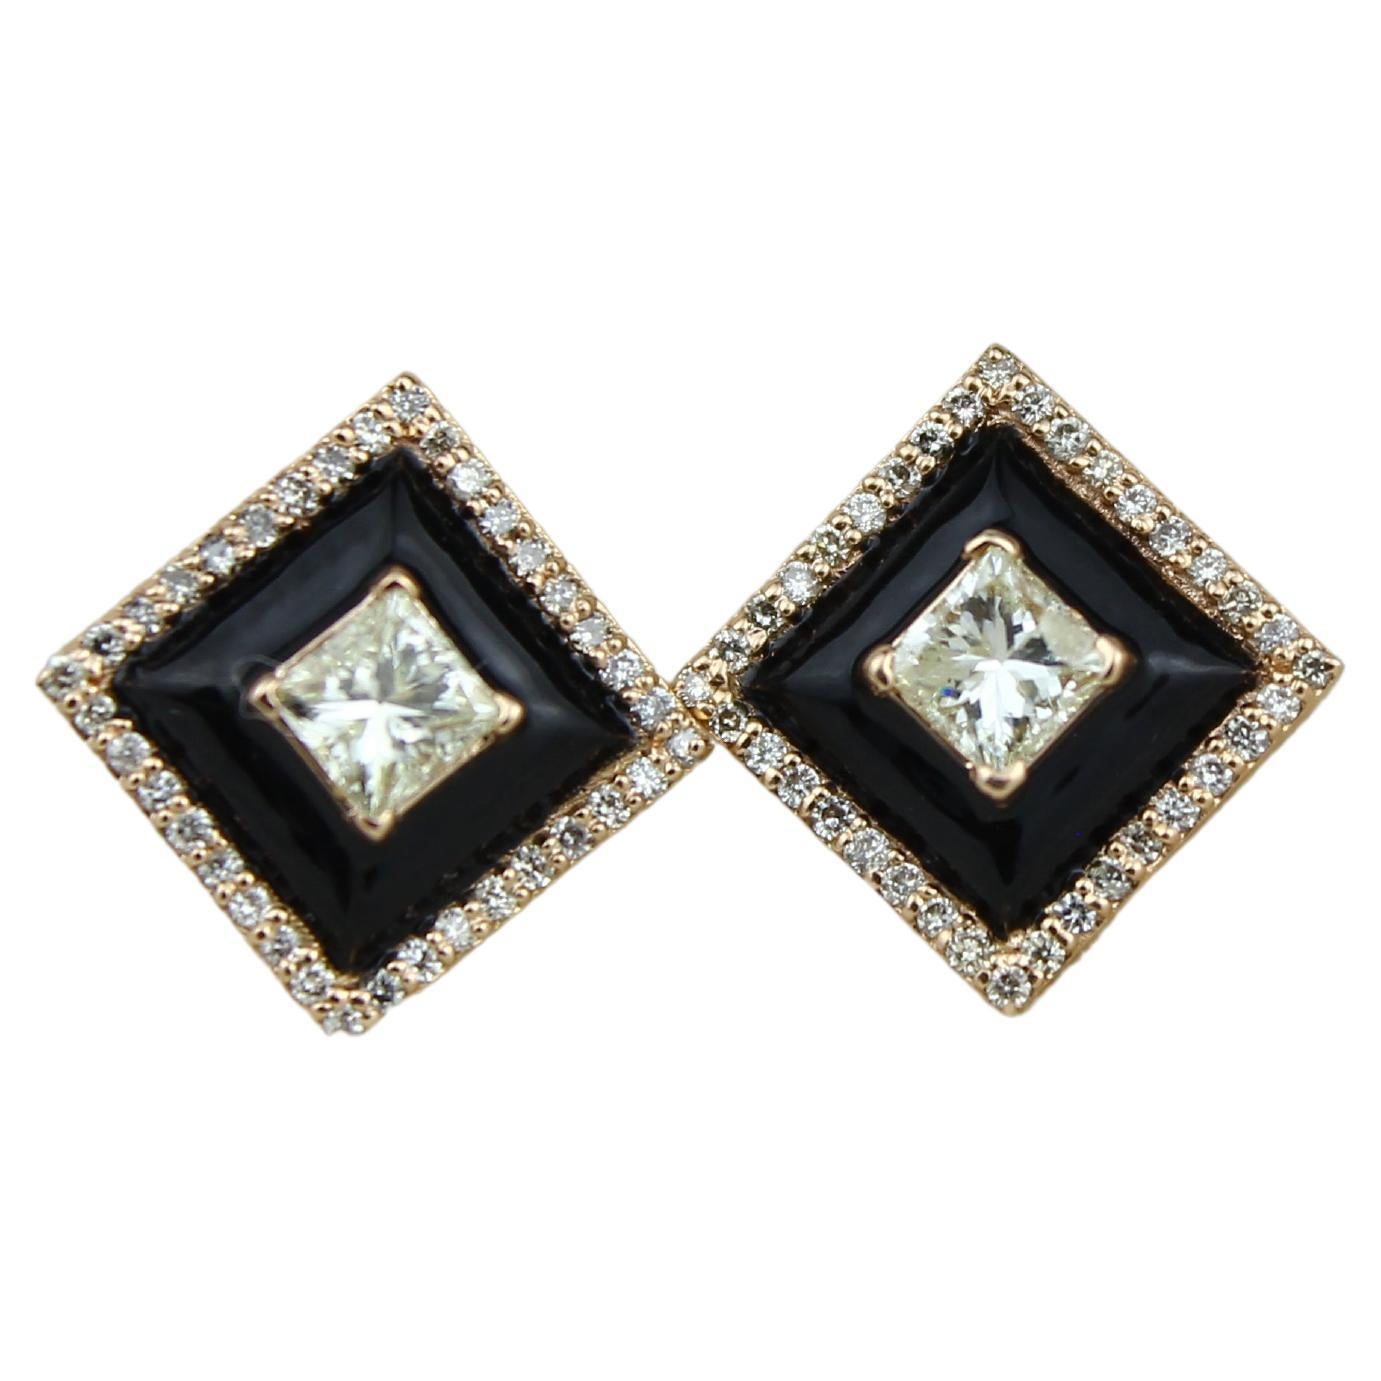 Boucles d'oreilles en or massif 18k émaillé noir avec diamants Princesse